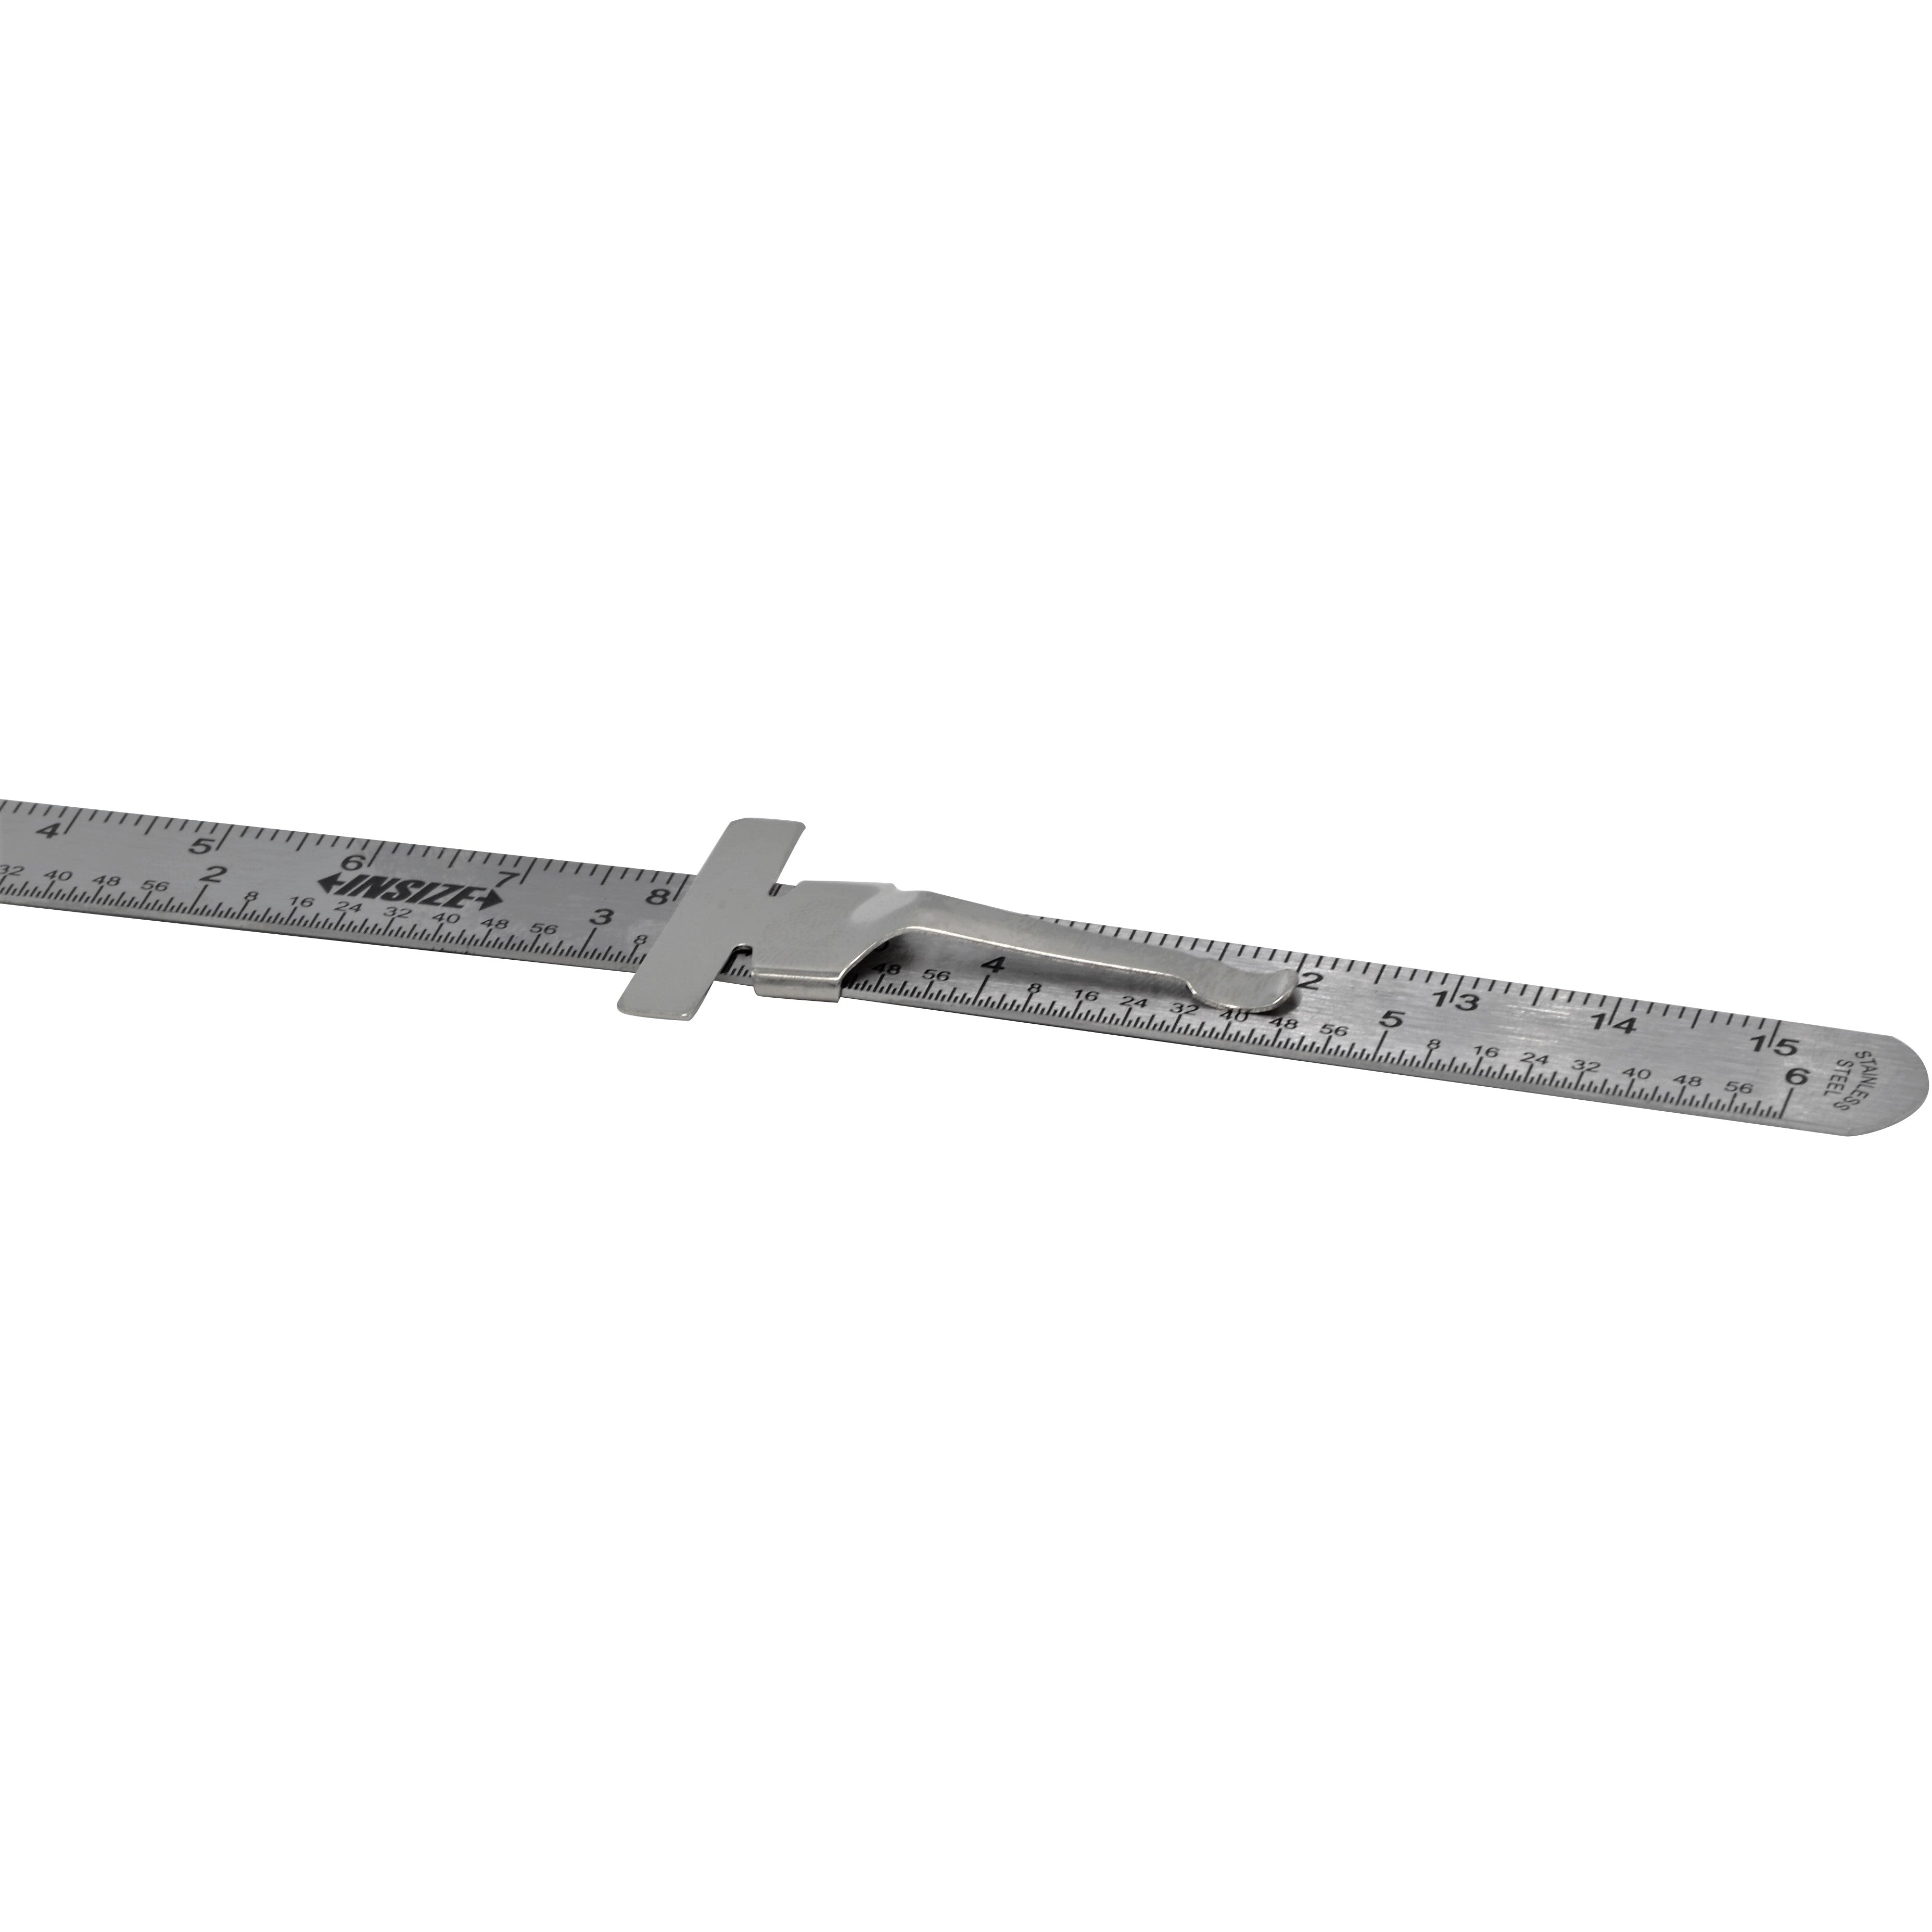 Stainless Steel Pocket ruler Metric / Imperial with depth gauge Range 0-150mm 